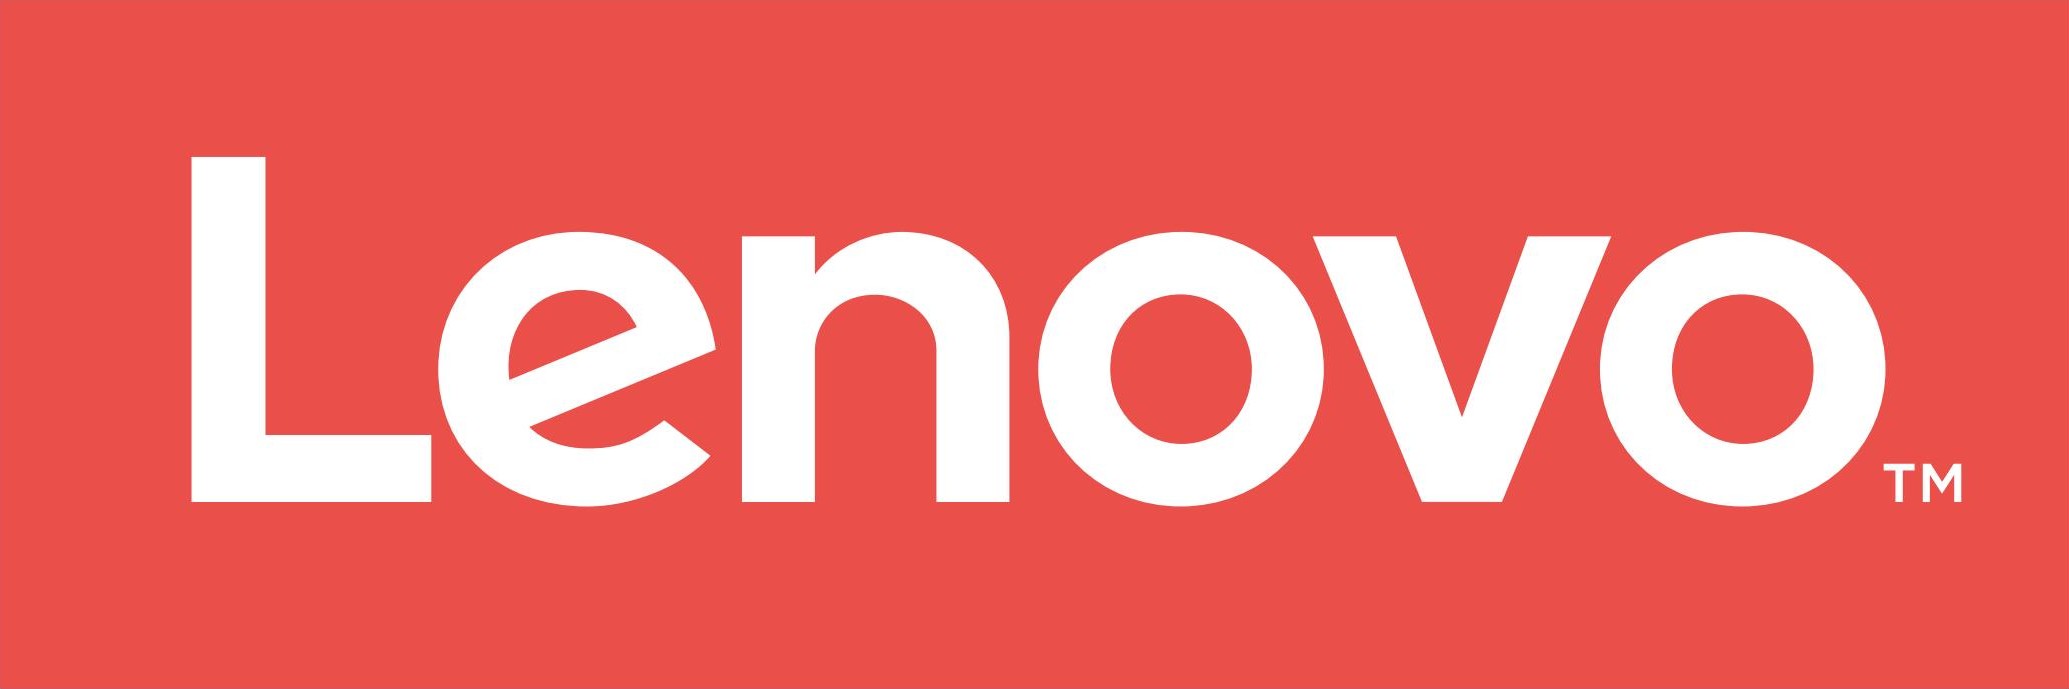 lenovo1-logo